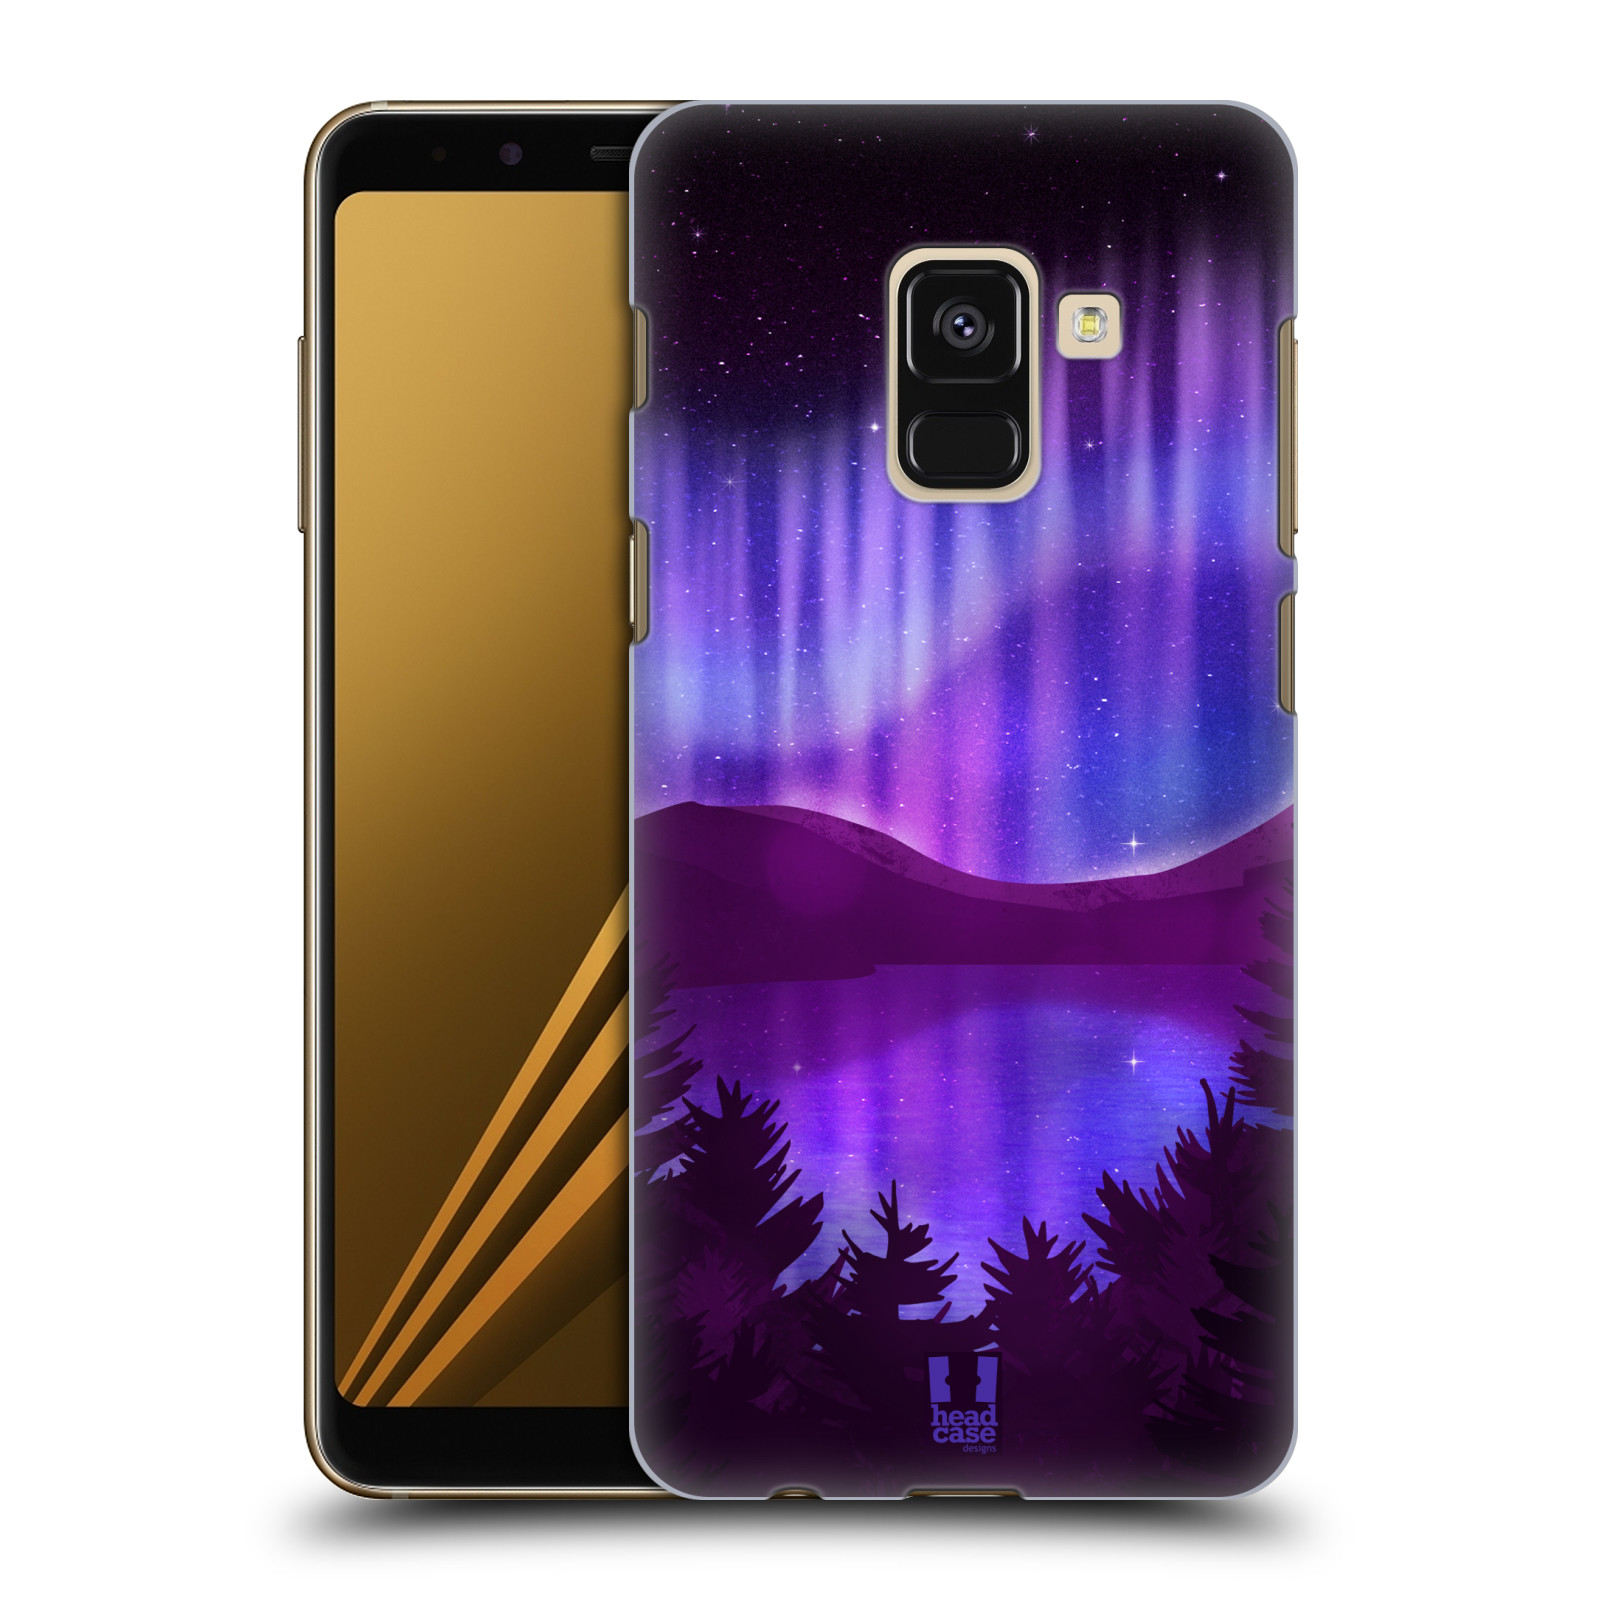 Zadní obal pro mobil Samsung Galaxy A8+ - HEAD CASE - Polární záře jezero, hory, les